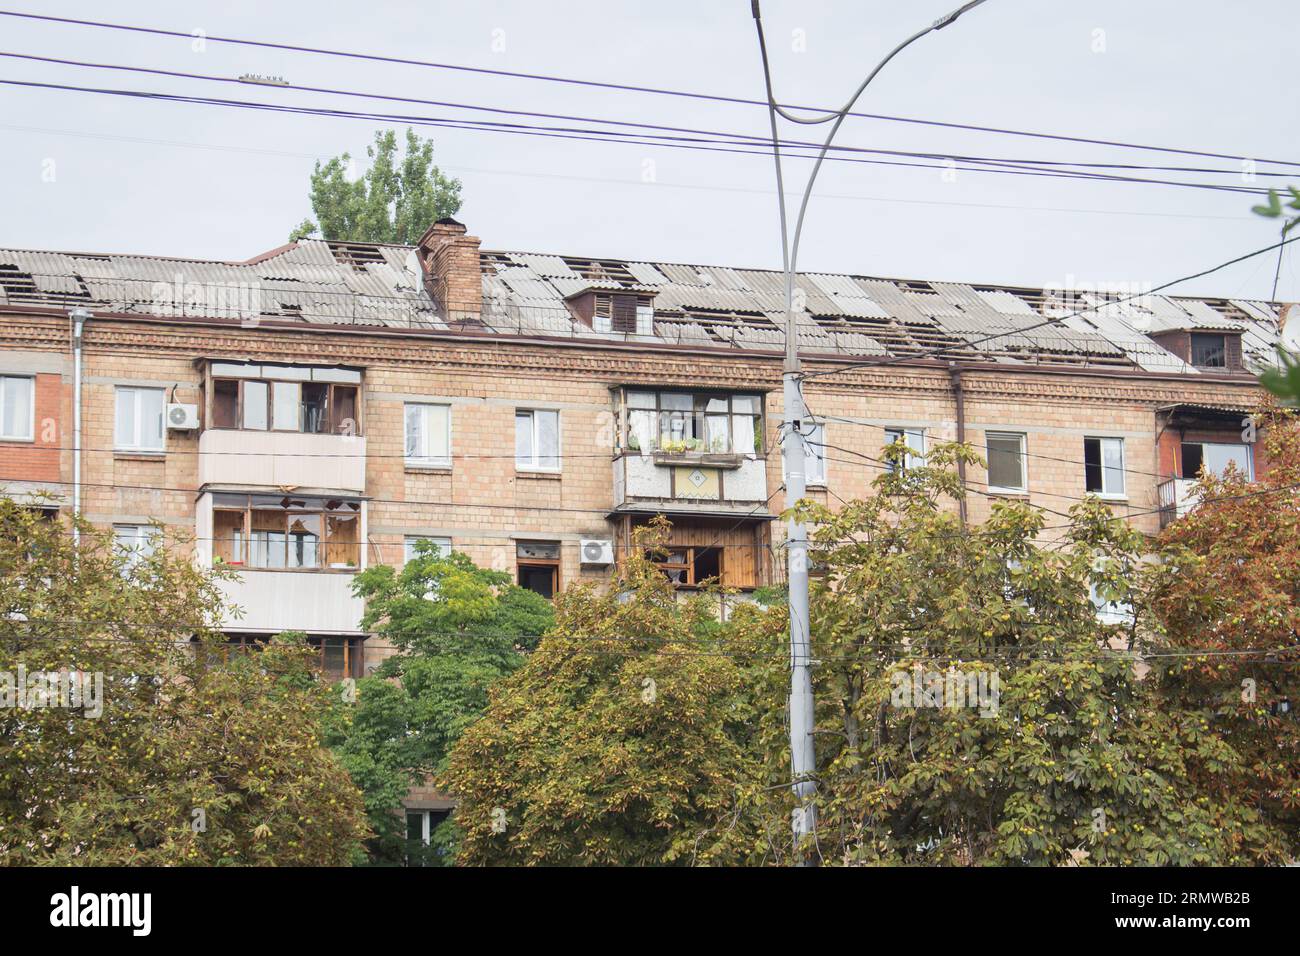 Raketenangriff in Kiew, Ukraine, august 2023. Fenster und Dach nach der Explosion kaputt gemacht. Haus durch Explosionswelle beschädigt. Krieg in der Ukraine Stockfoto